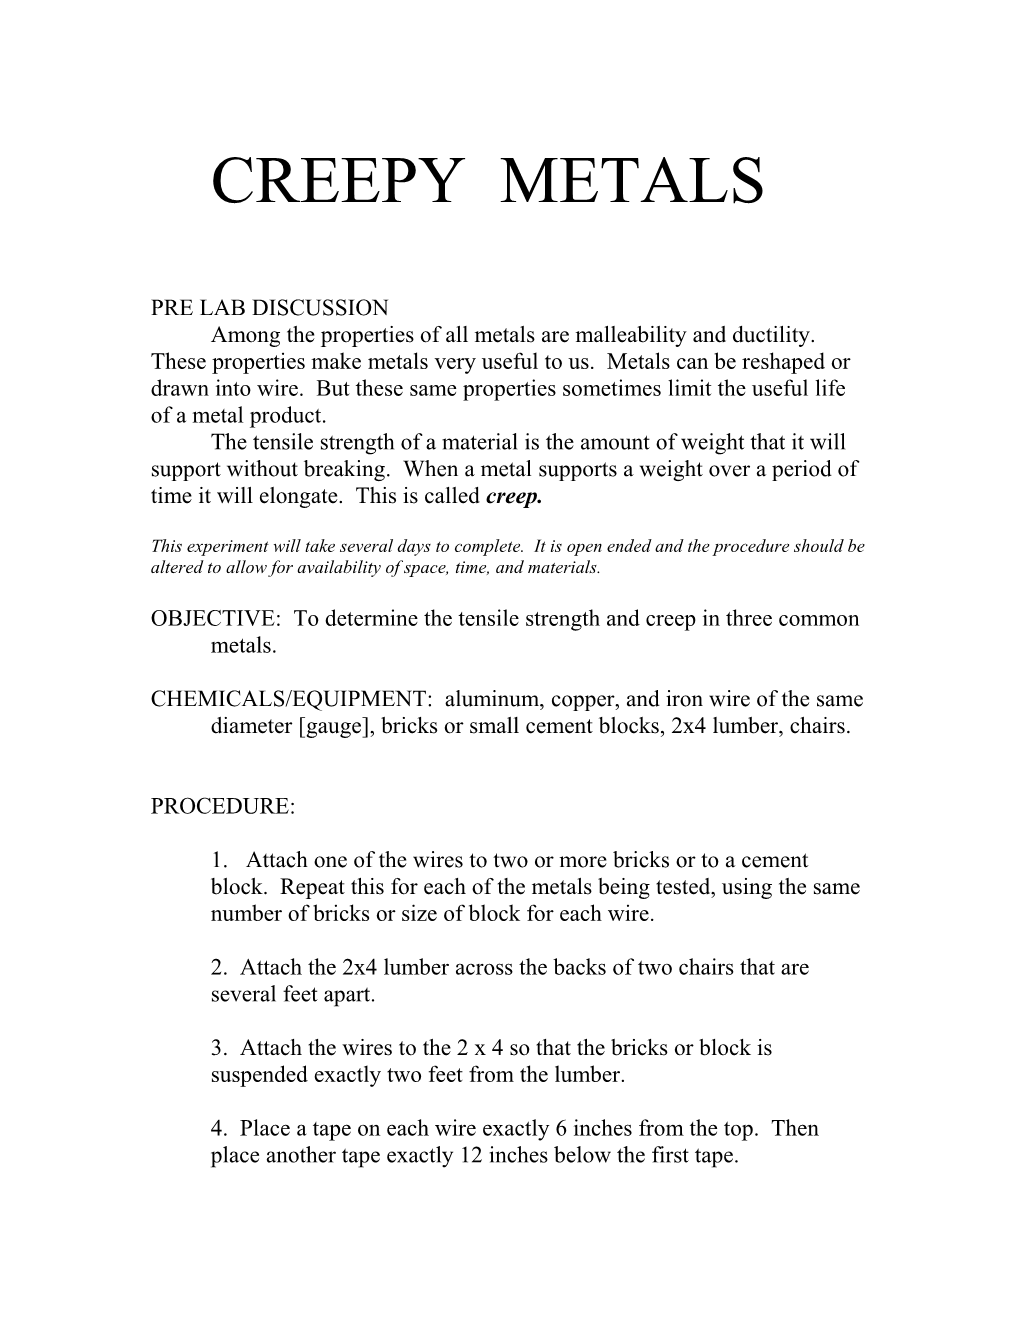 Creepy Metals